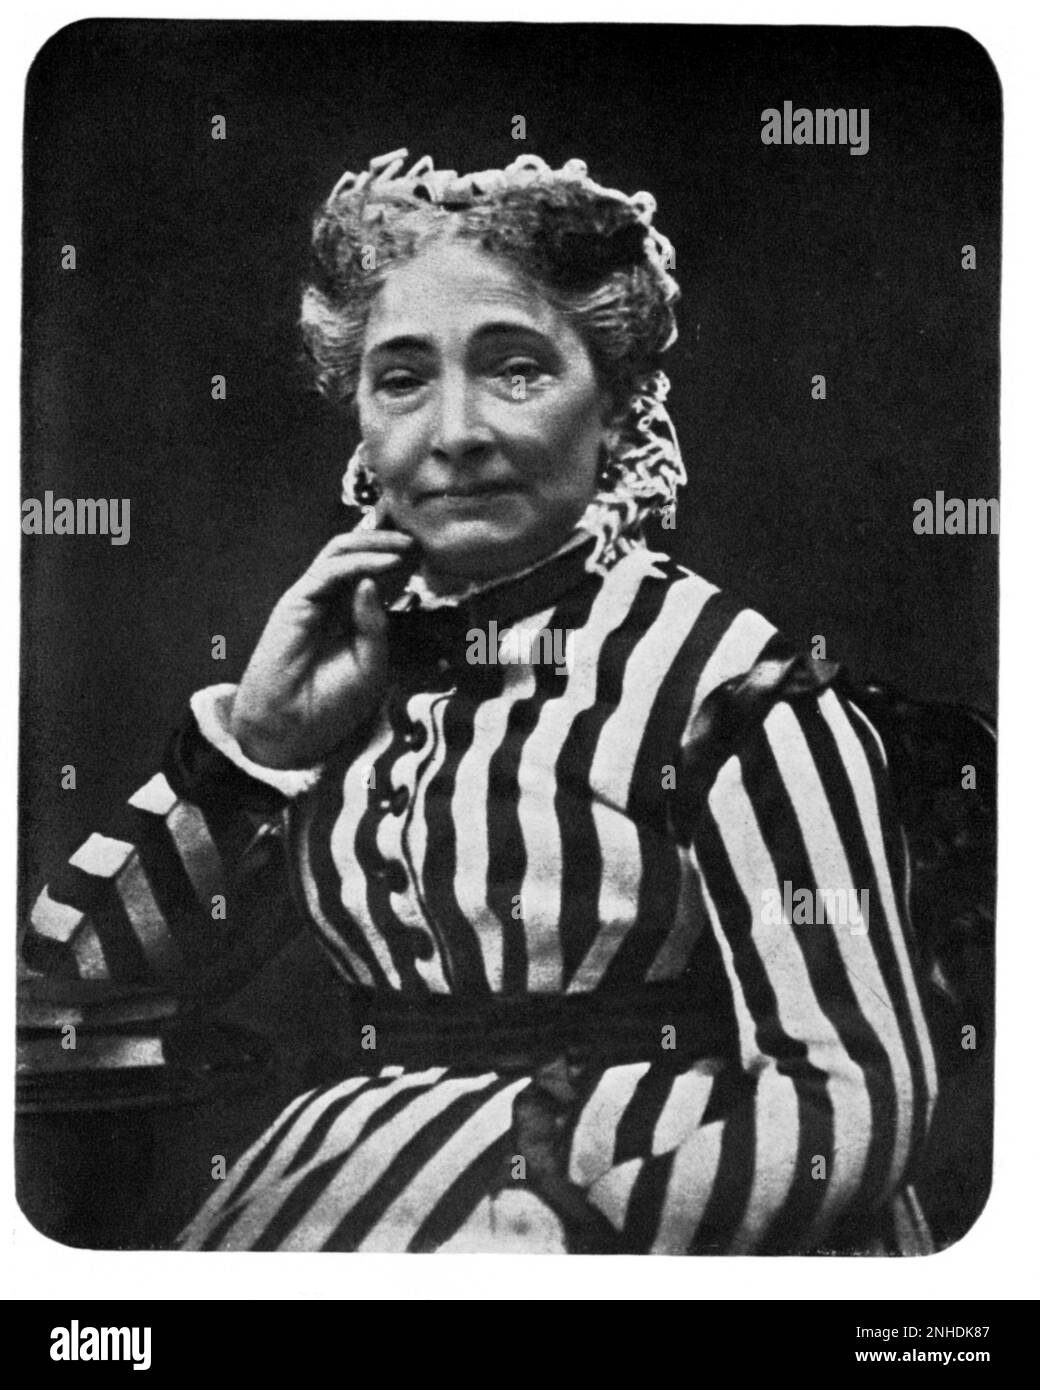 1880 ca. : Il Teatro attrice francese VARLEY , nonna materna dell'attore russo , regista e teorico Konstantin Sergeevic STANISLAVSKIJ ( nato K. S. Alekseev , Moskow 1863 - 1938 ) , fondatore di V.I. Nemirovic Dancenko of the ARTS THEATER of Moskow in 1898 , amico di CECHOV e GORKIJ - TEATRO - REGISTRAZIONE TEATRALE - intellettuale - ritratto - stanislavski - Stanislavsky - attore - attrice - capelli bianchi - capelli bianchi ---- Archivio GBB Foto Stock